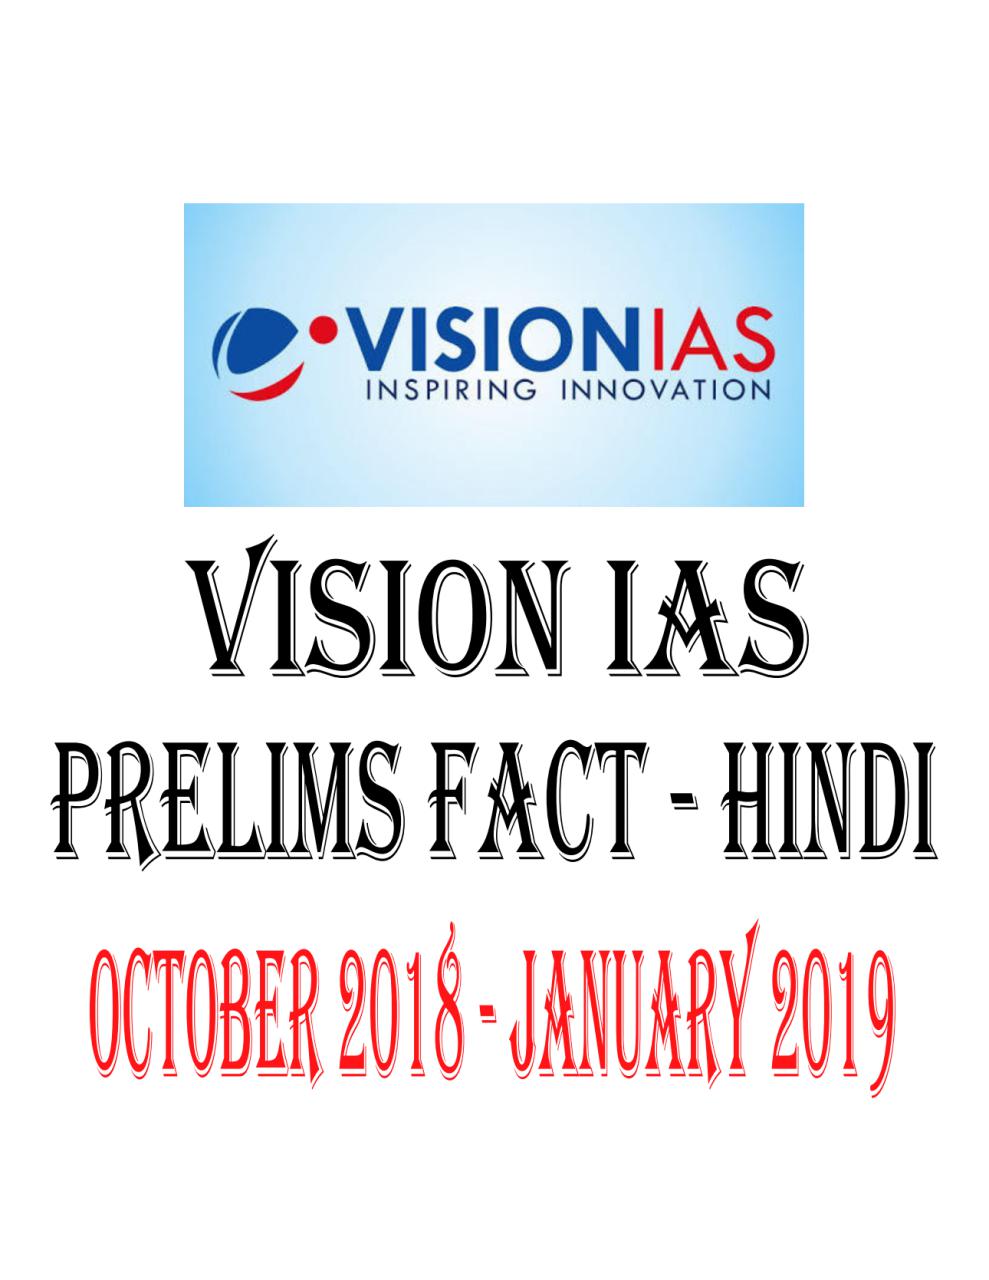 VISION IAS PRELIMS FACT HINDI